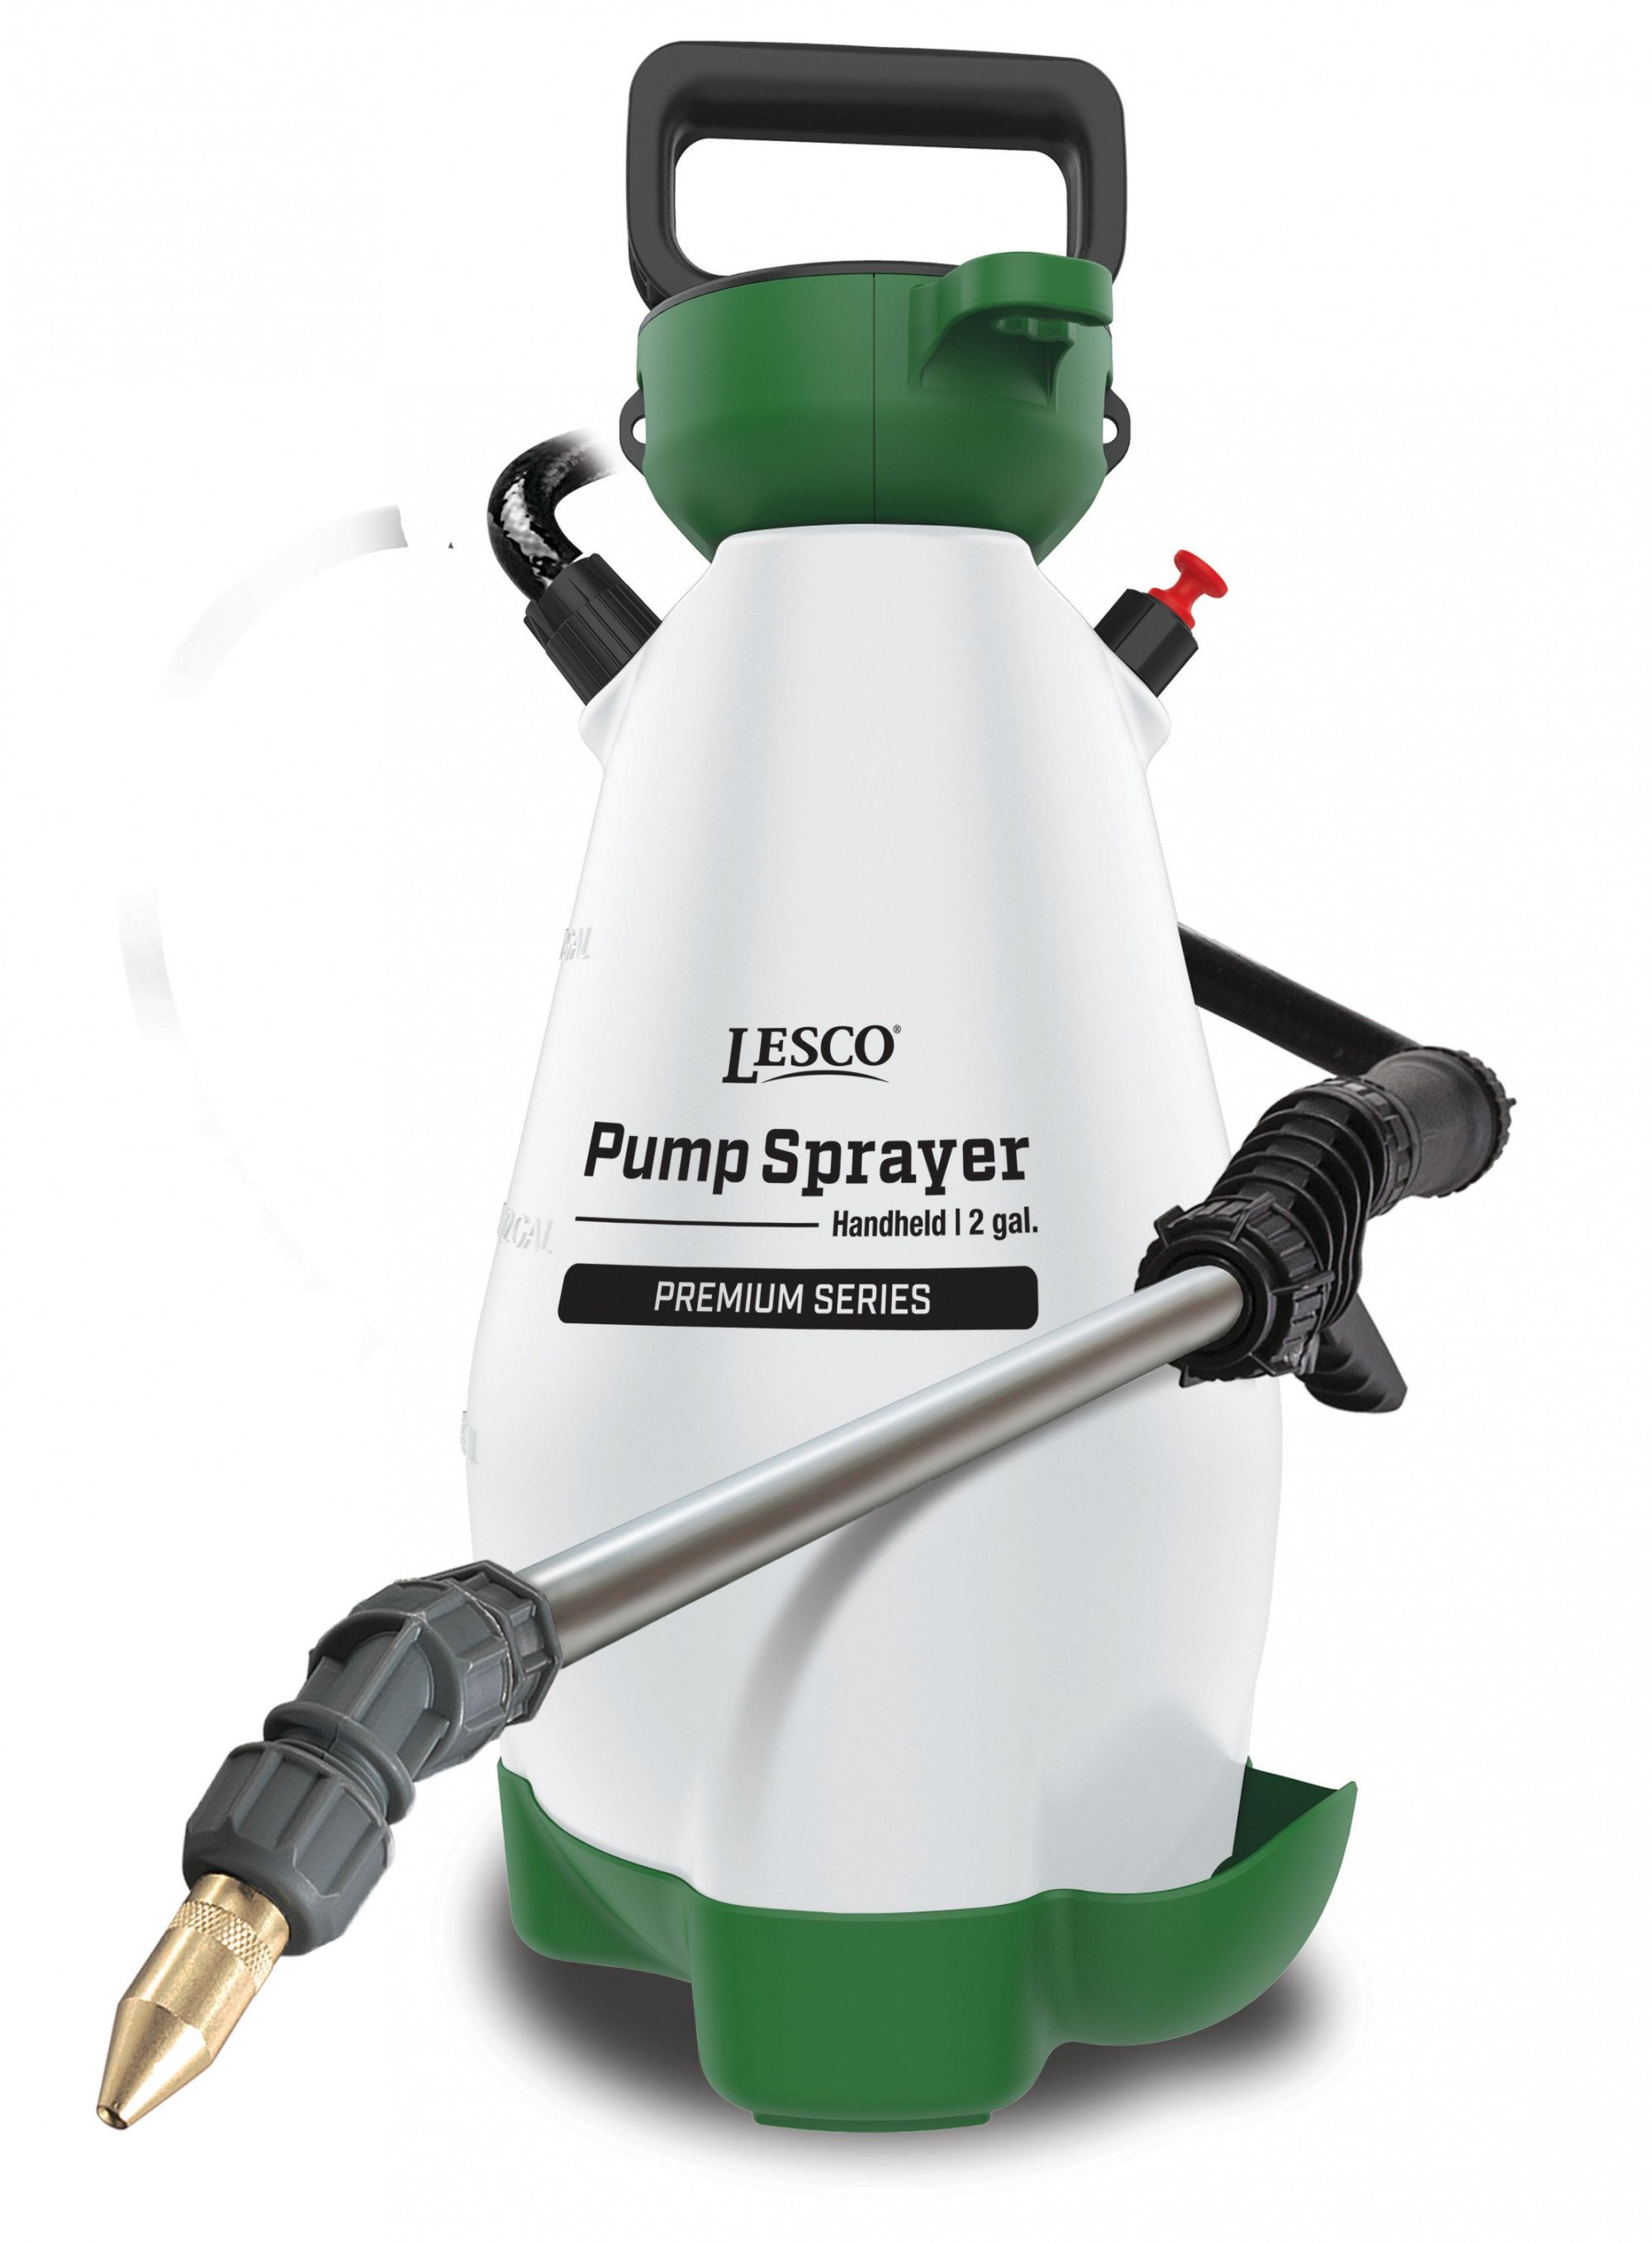 LESCO® Pump Sprayer Handheld, 2 Gal, Premium Series, Model 190596